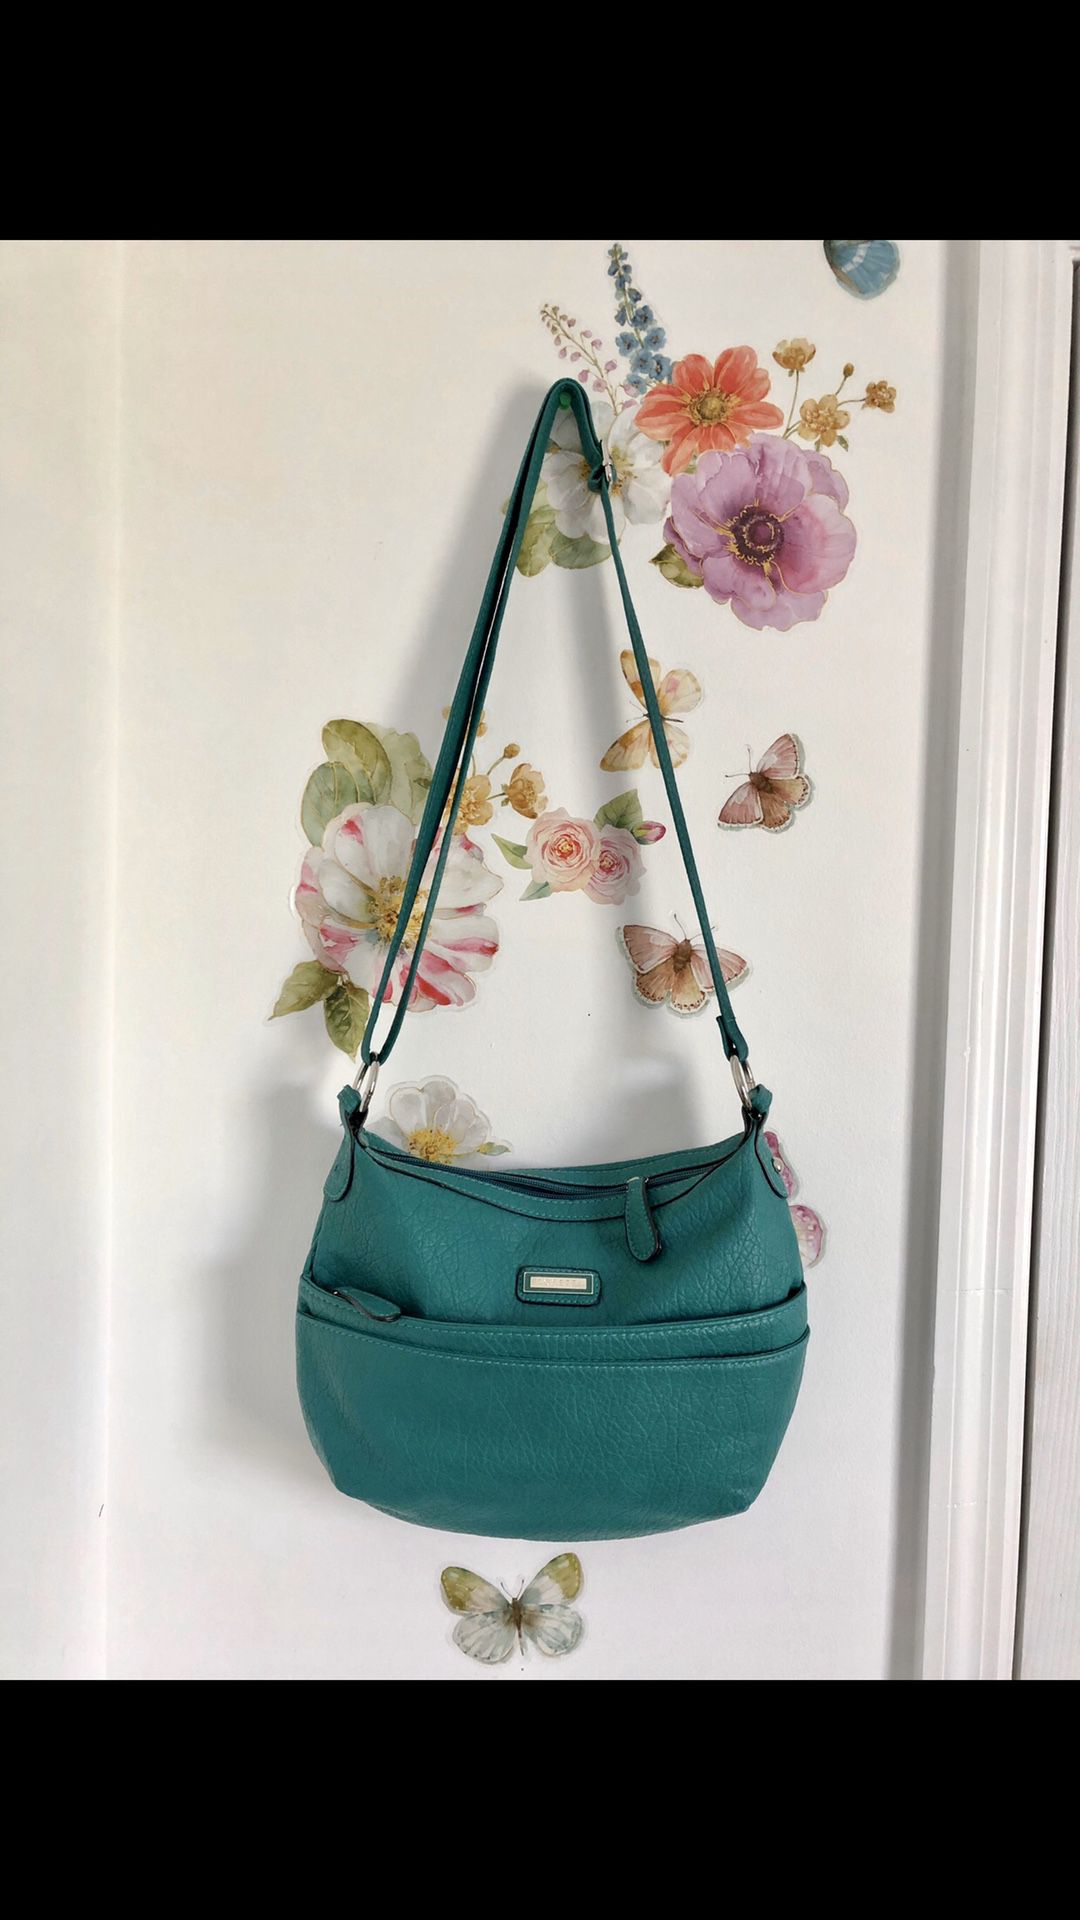 Beautiful green handbag